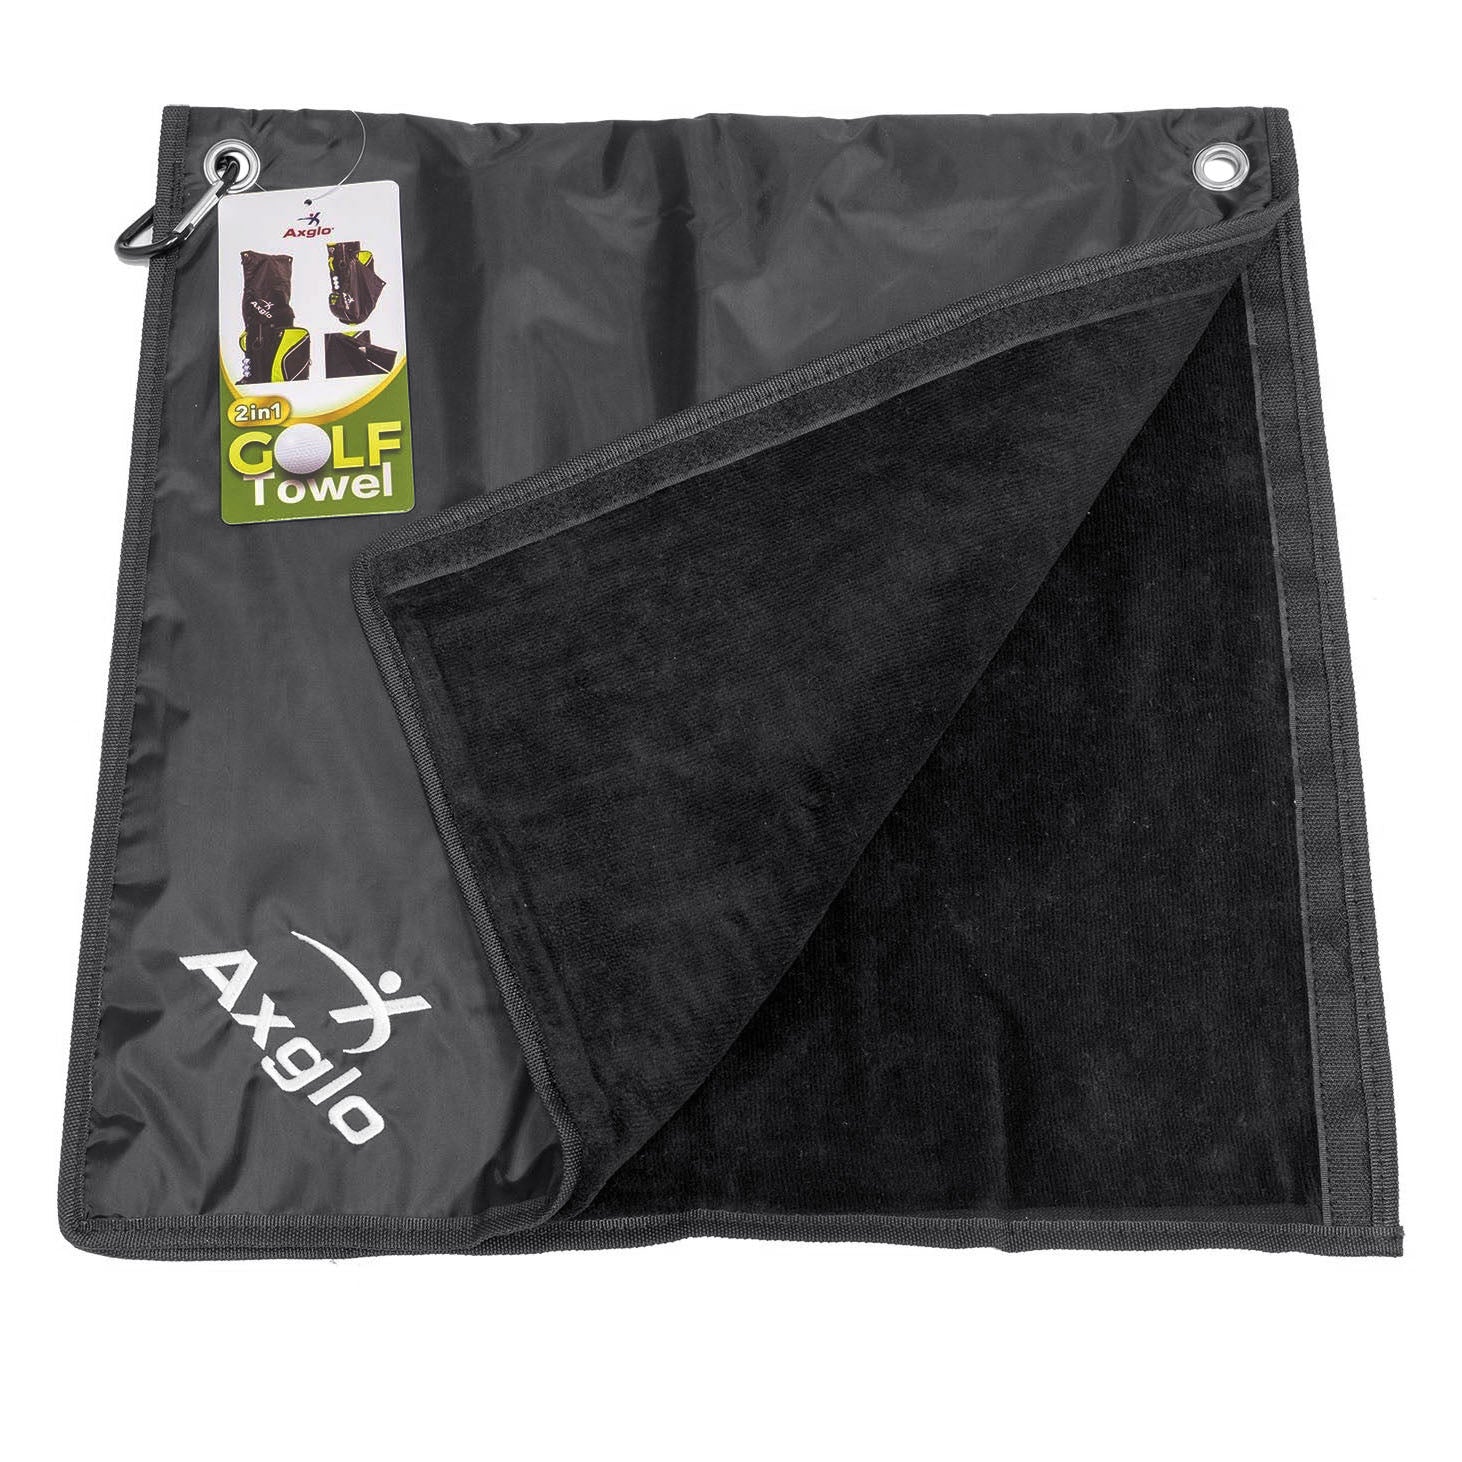 Axglo Golf Rain Hood Towel 2in1